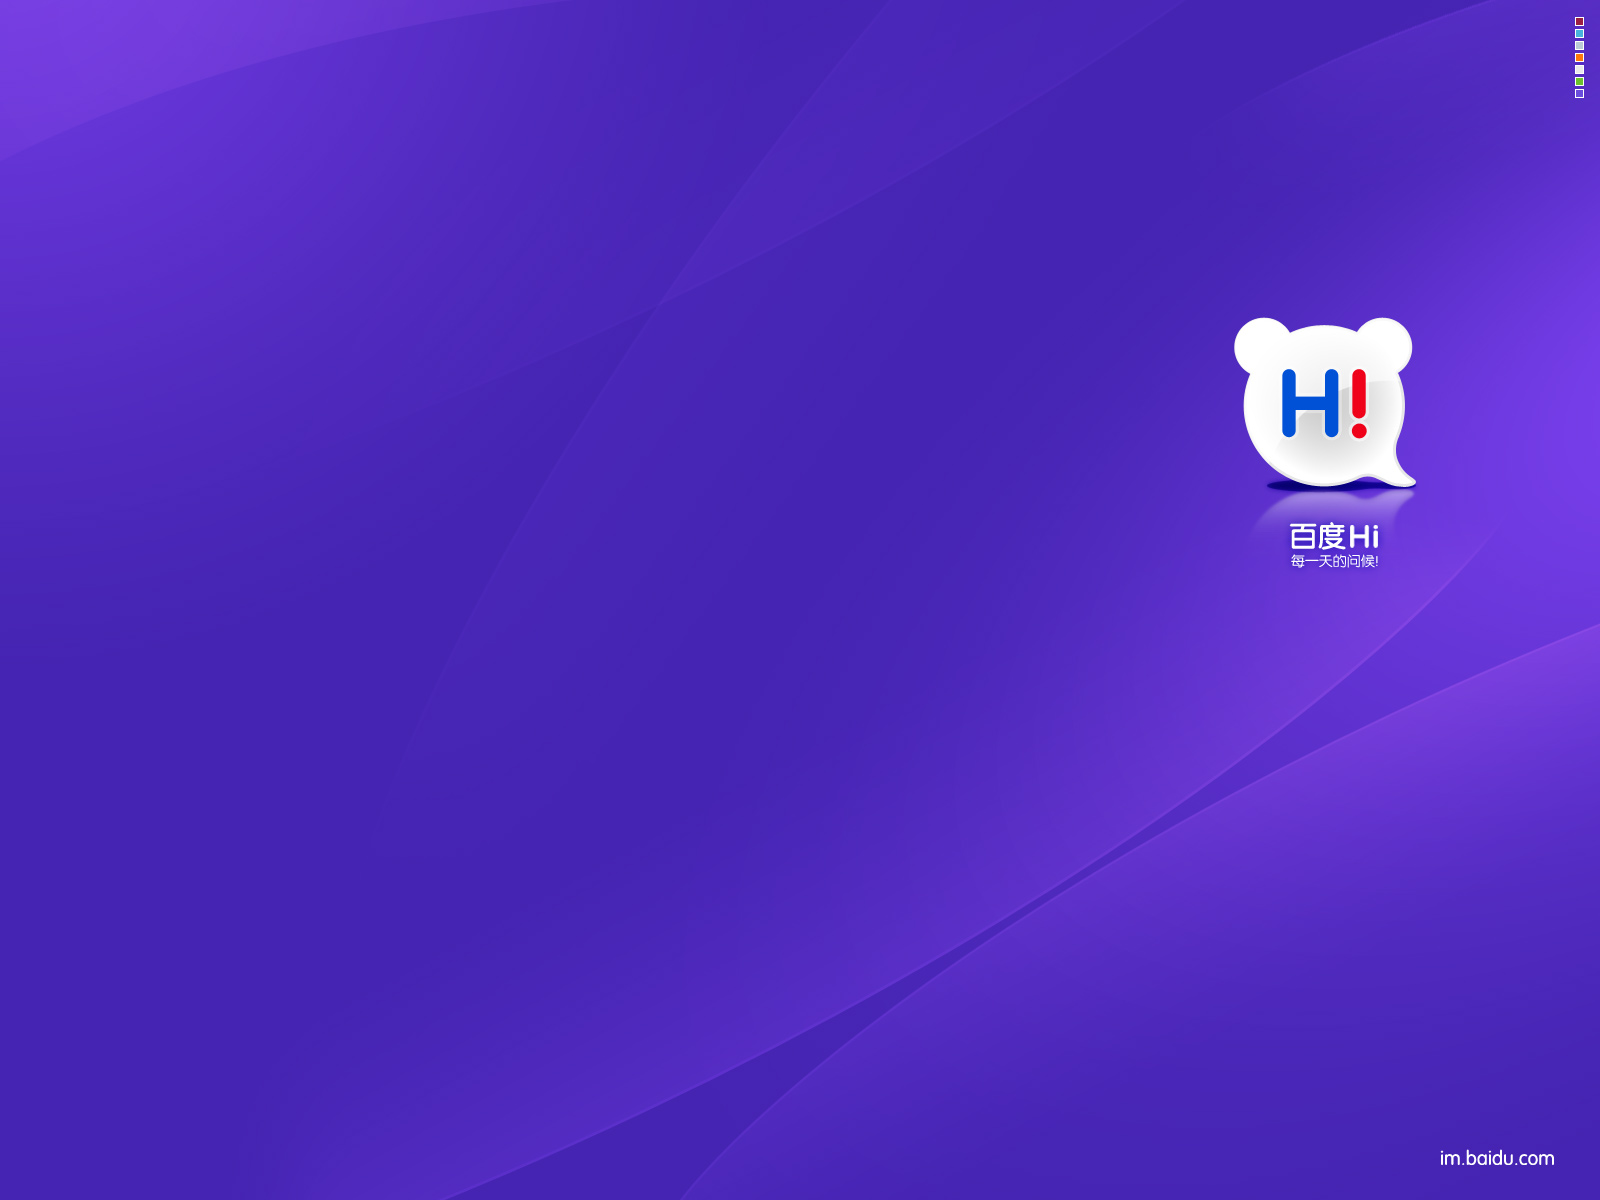 Популярные заставки и фоны Baidu_Hi на компьютер